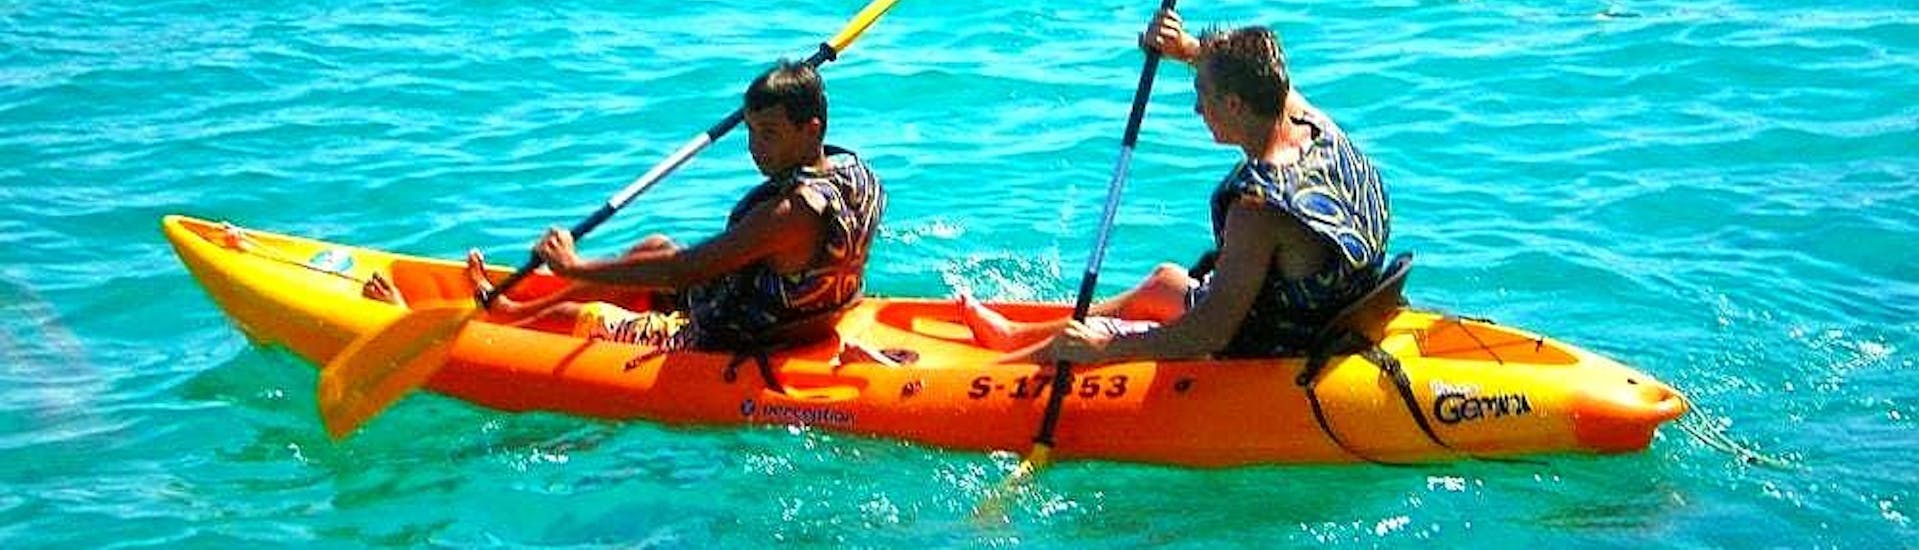 sea-kayak-rental-island-of-gozo-joyride-watersports-gozo